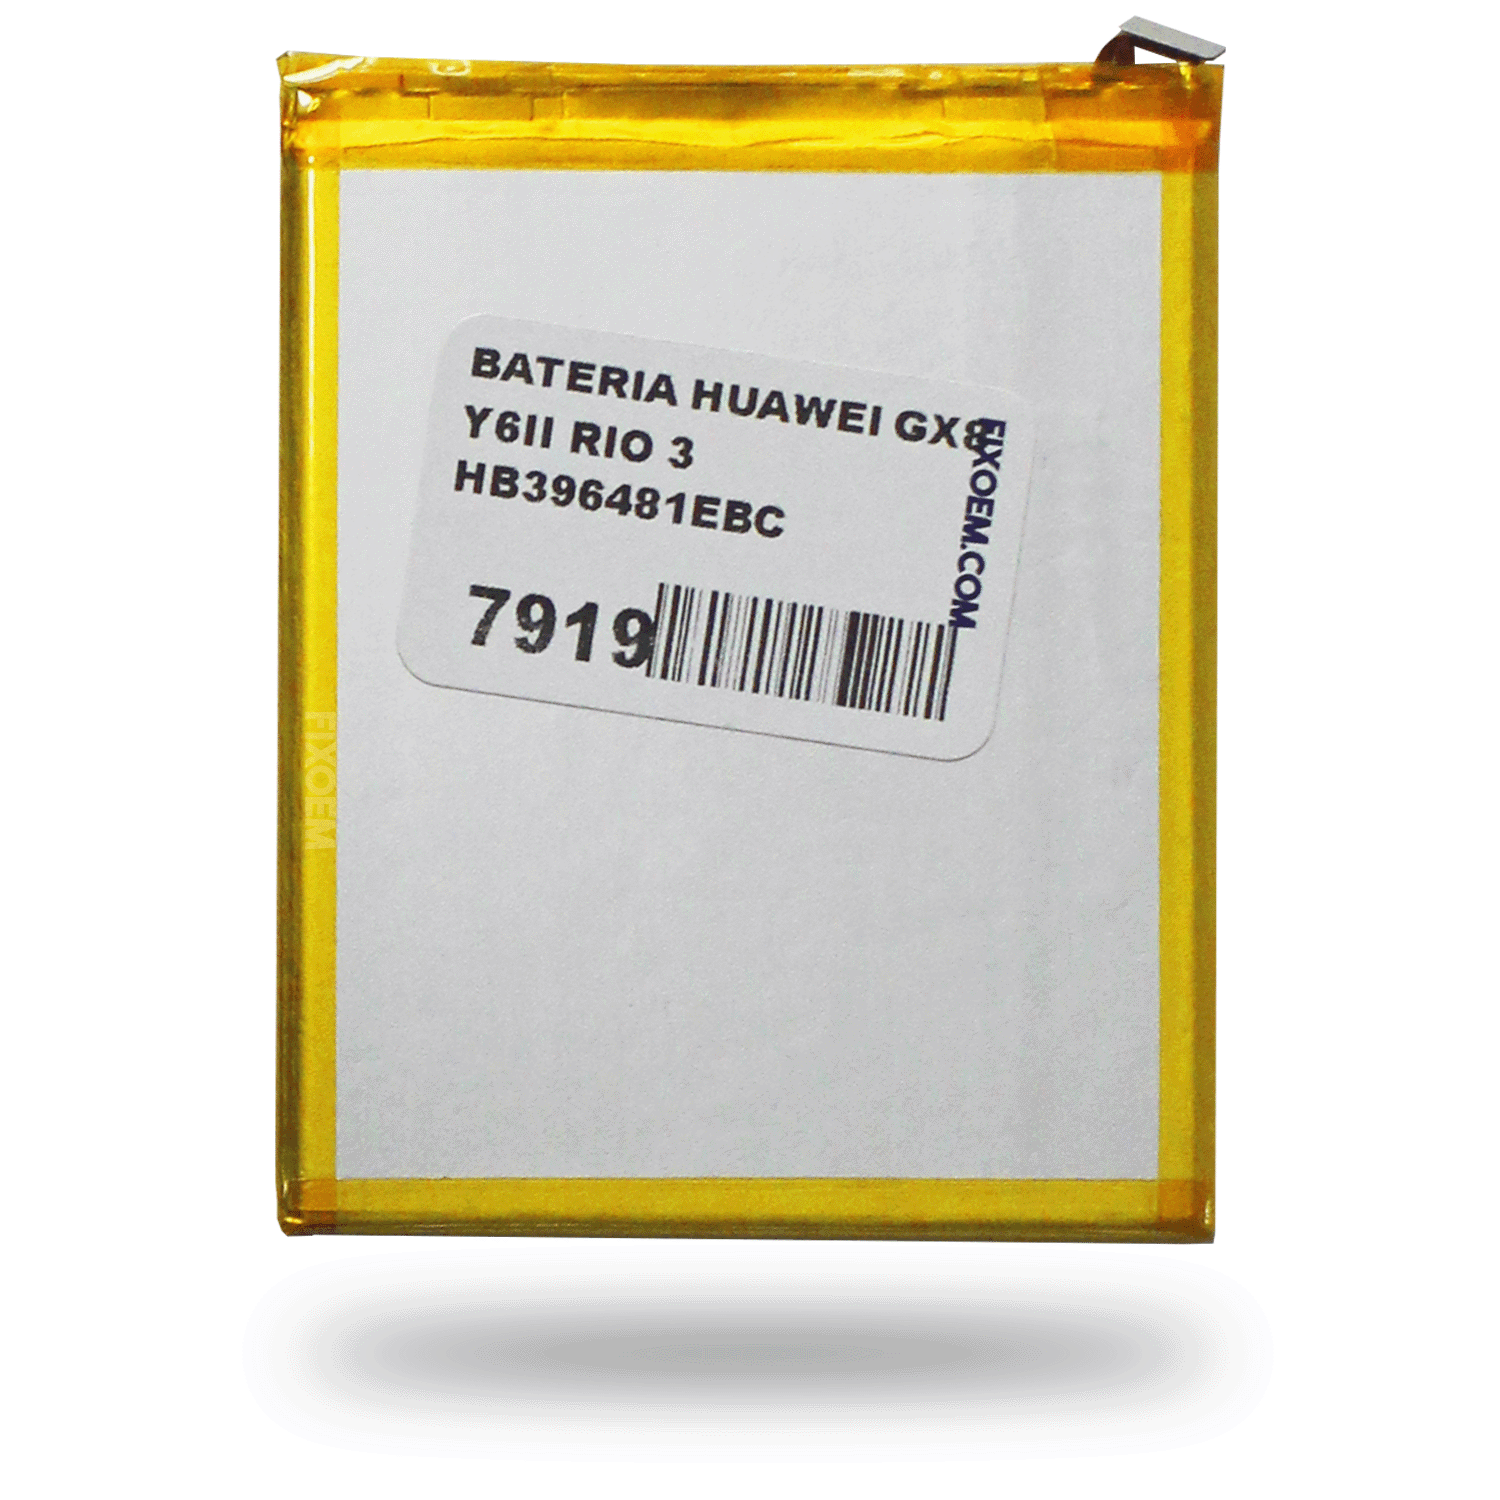 Bateria Huawei Gx8 / Y6Ii / Y62 / Rio 3 Hb396481Ebc. a solo $ 120.00 Refaccion y puestos celulares, refurbish y microelectronica.- FixOEM